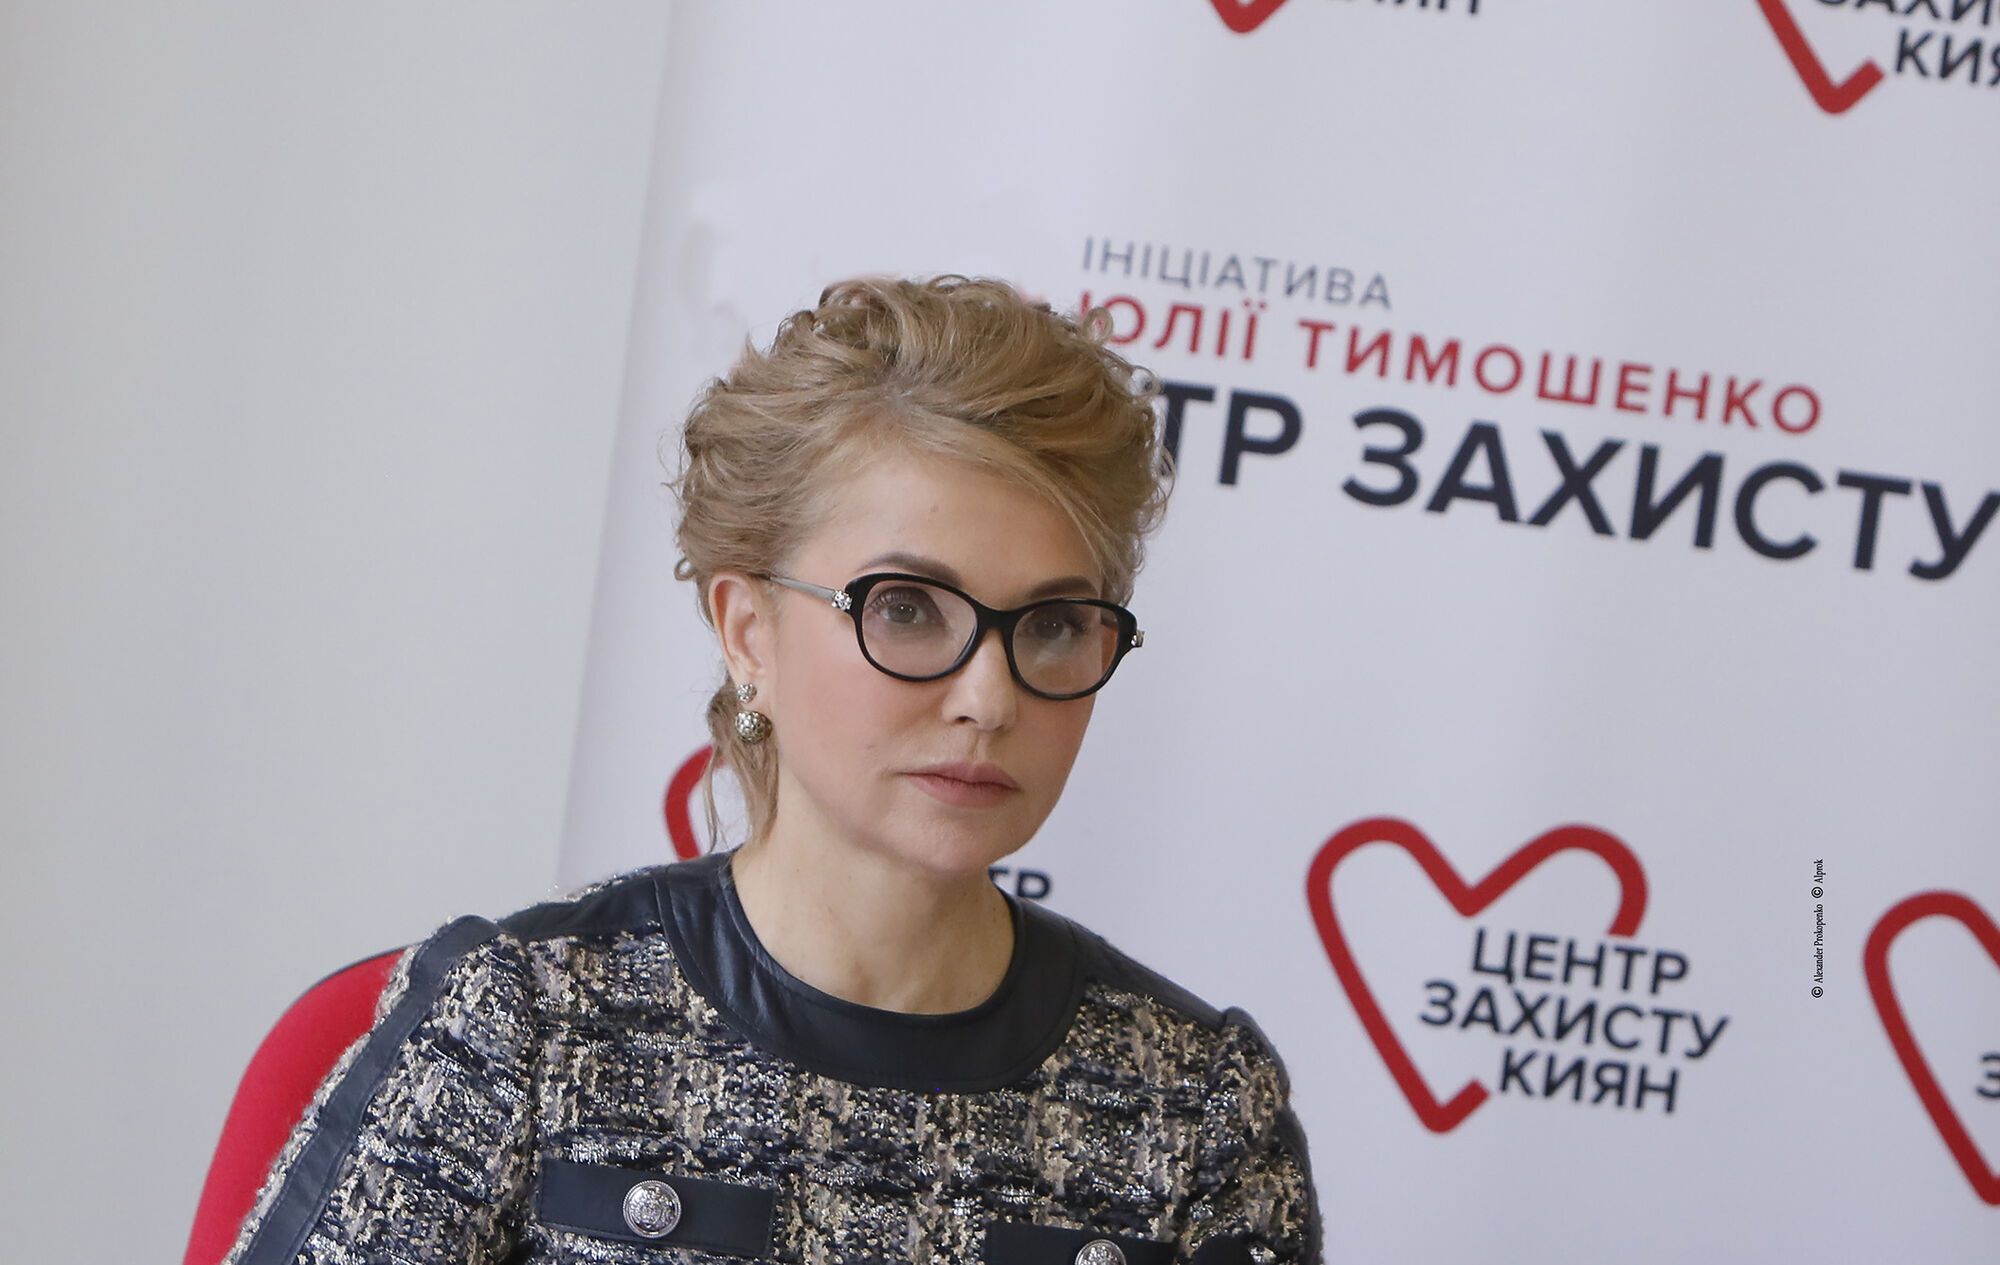 Тимошенко закликала аграріїв об'єднатися заради недопущення продажу землі